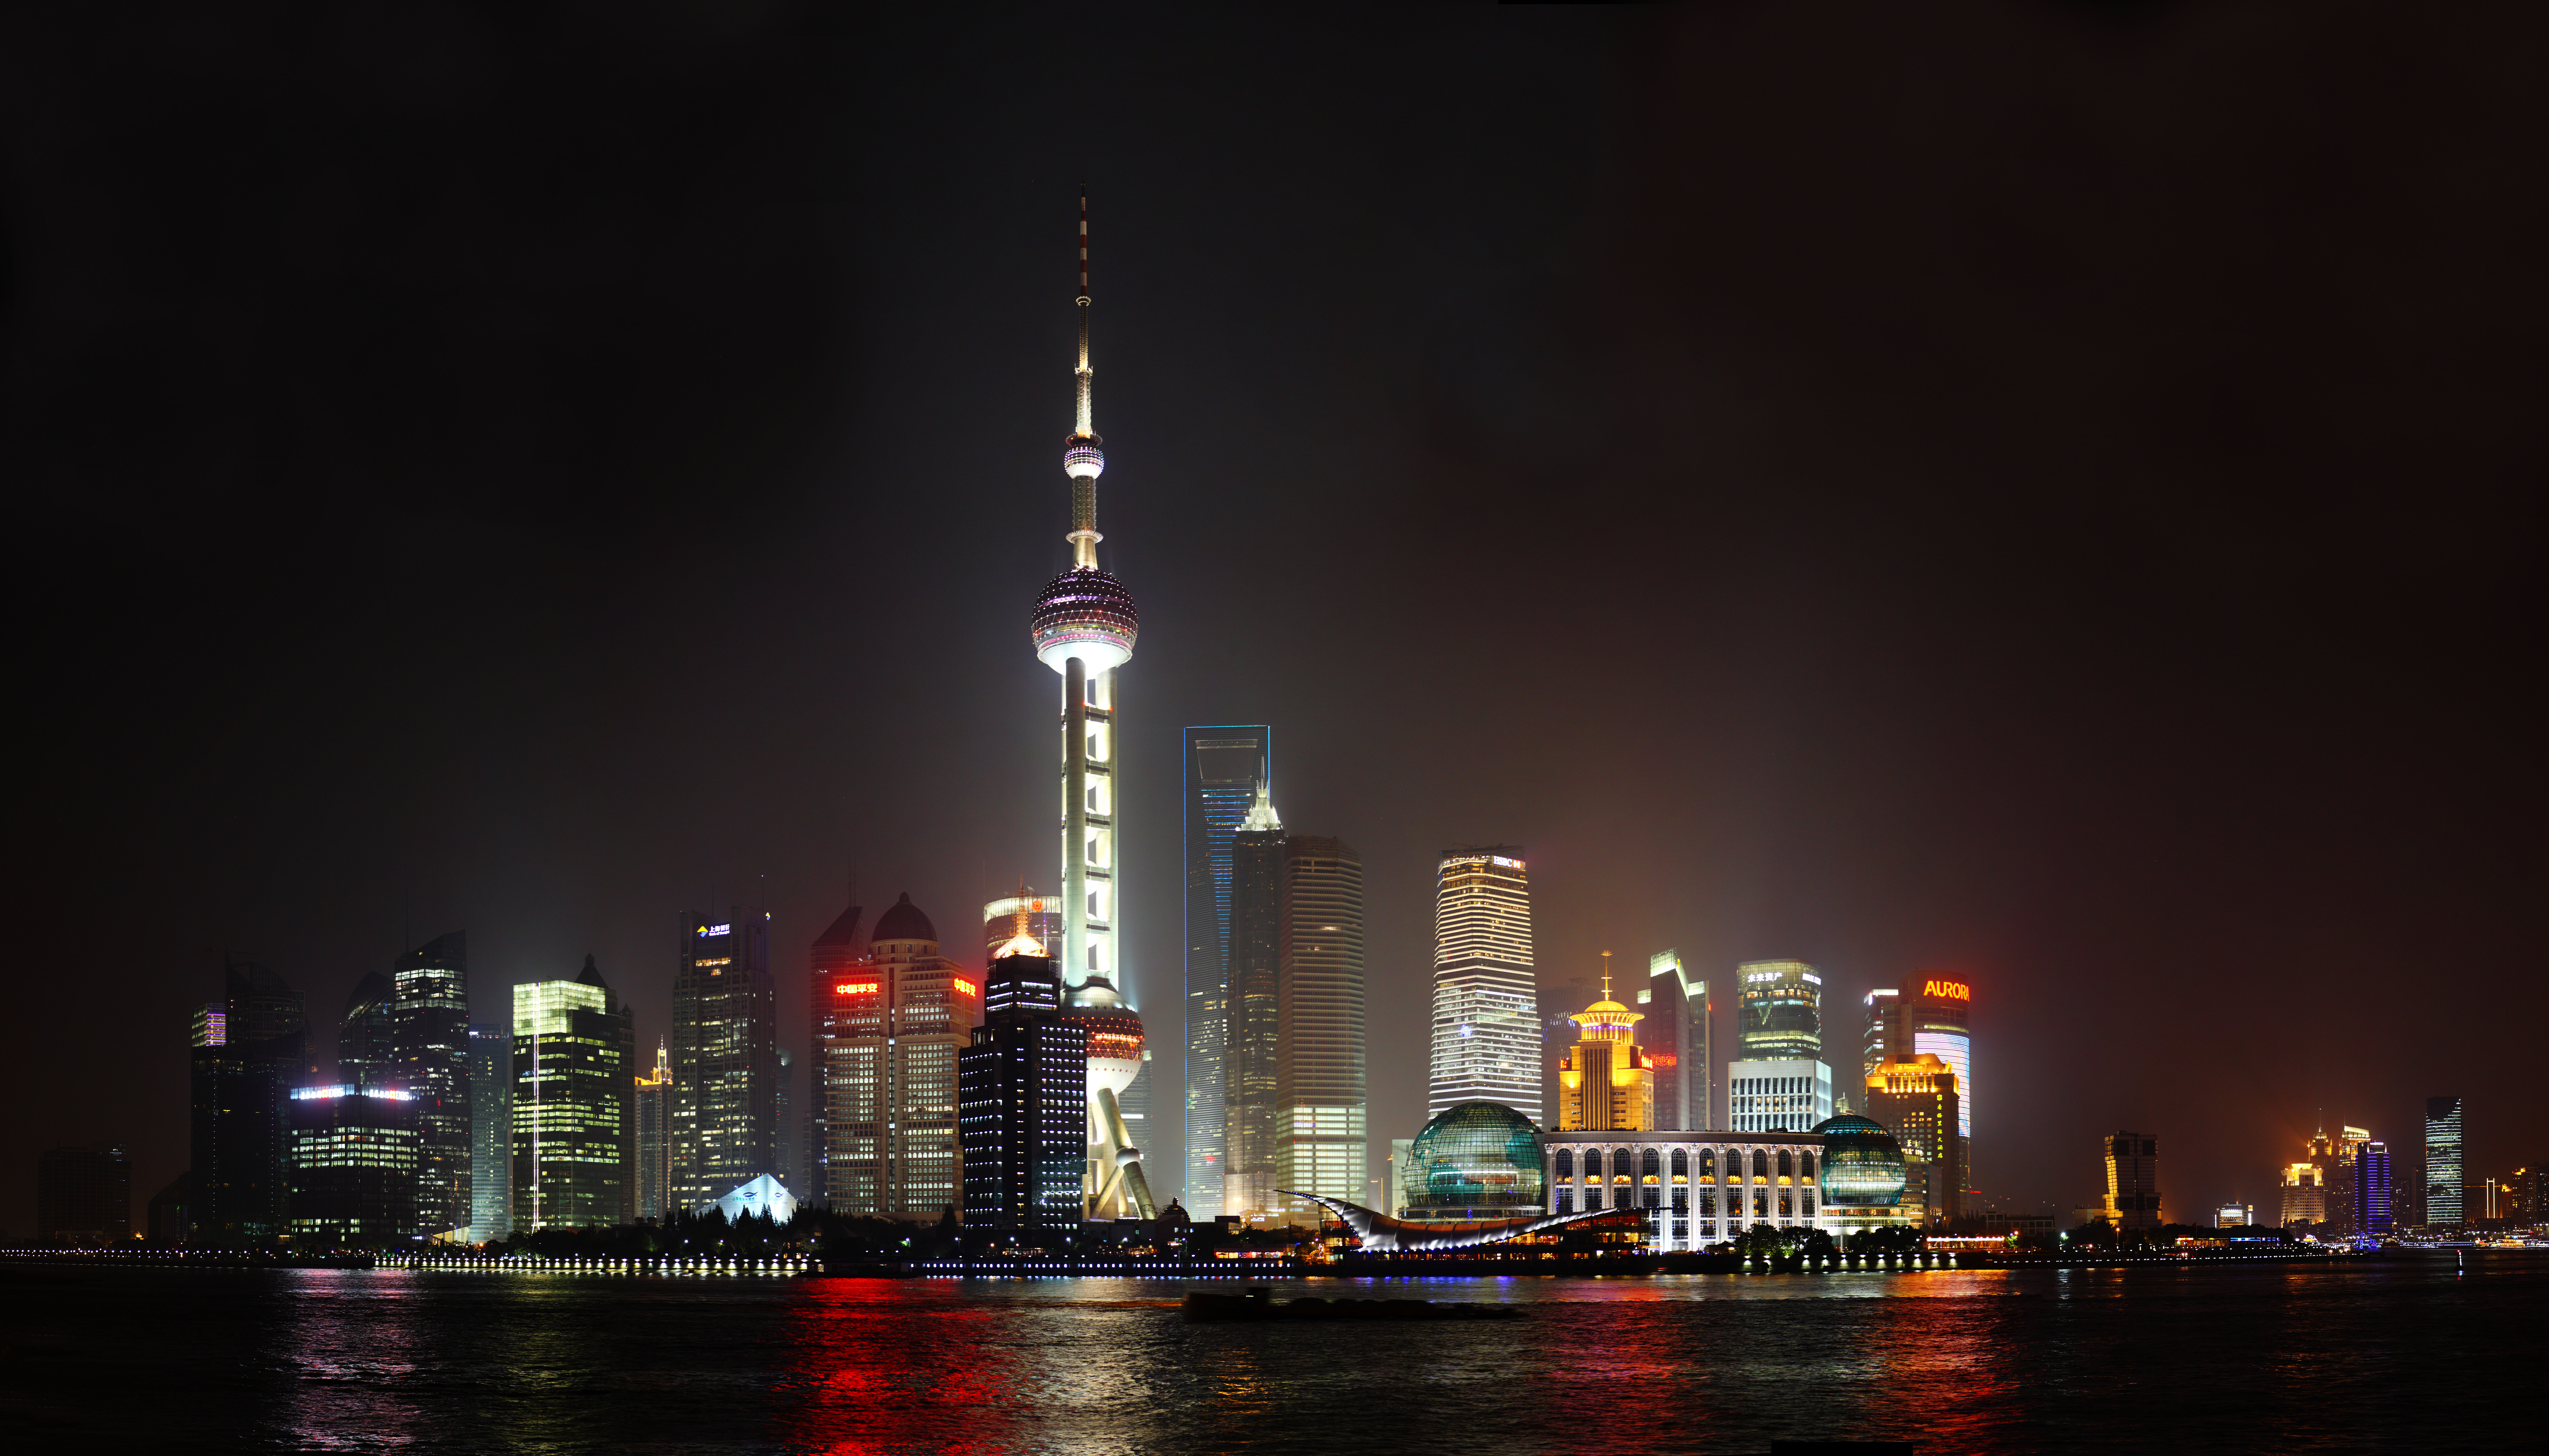 fotografia, material, livra, ajardine, imagine, proveja fotografia,Uma viso noturna de Shanghai, Assista trem de bola claro oriental; uma torre, rio, Non, Eu ilumino isto